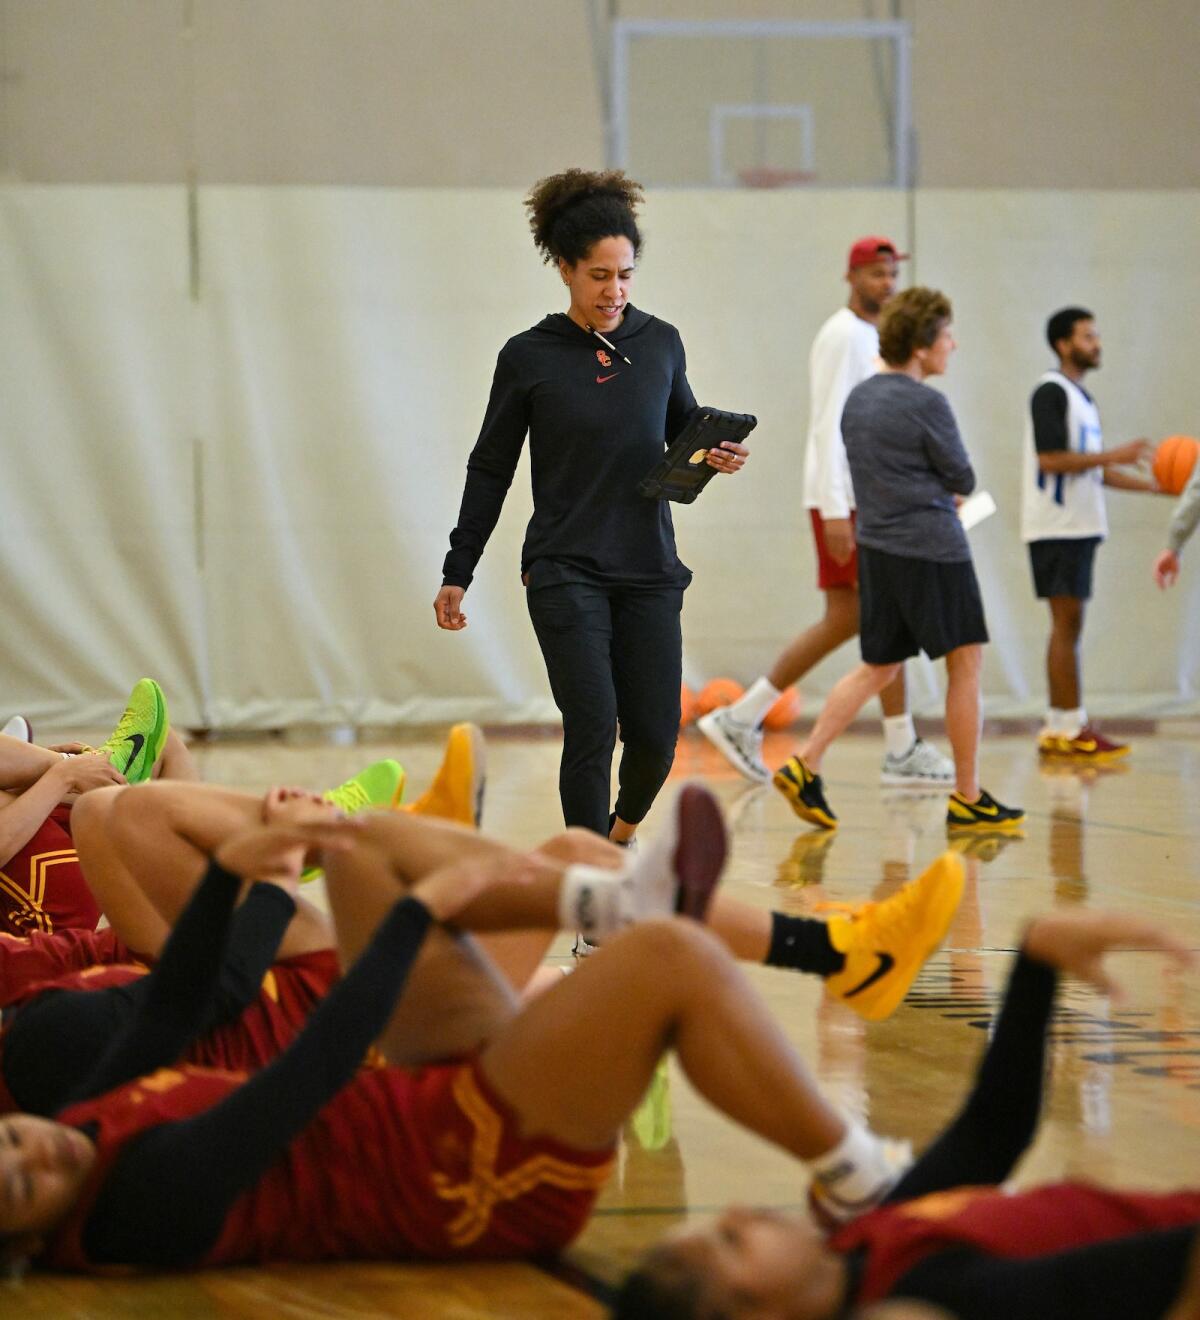 南加州大学女子篮球体能教练凯利·多曼迪在球员们伸展身体时看着她的平板电脑